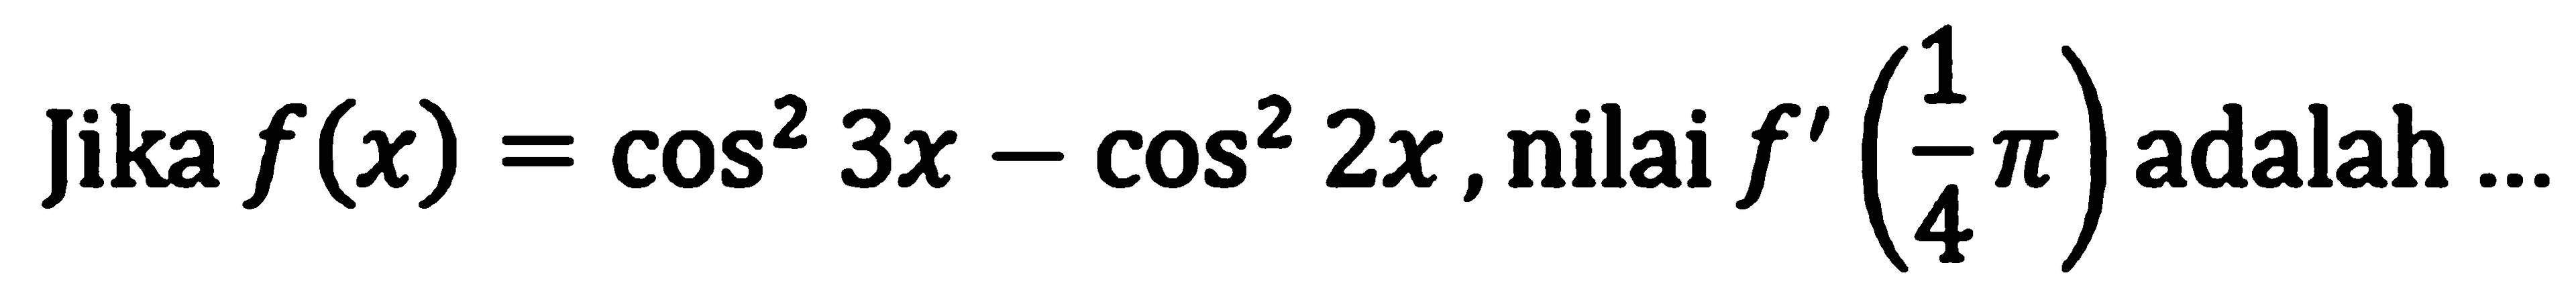 Jika f(x)=cos^2 3x - cos^2 2x, nilai f'(1/4 pi) adalah ...